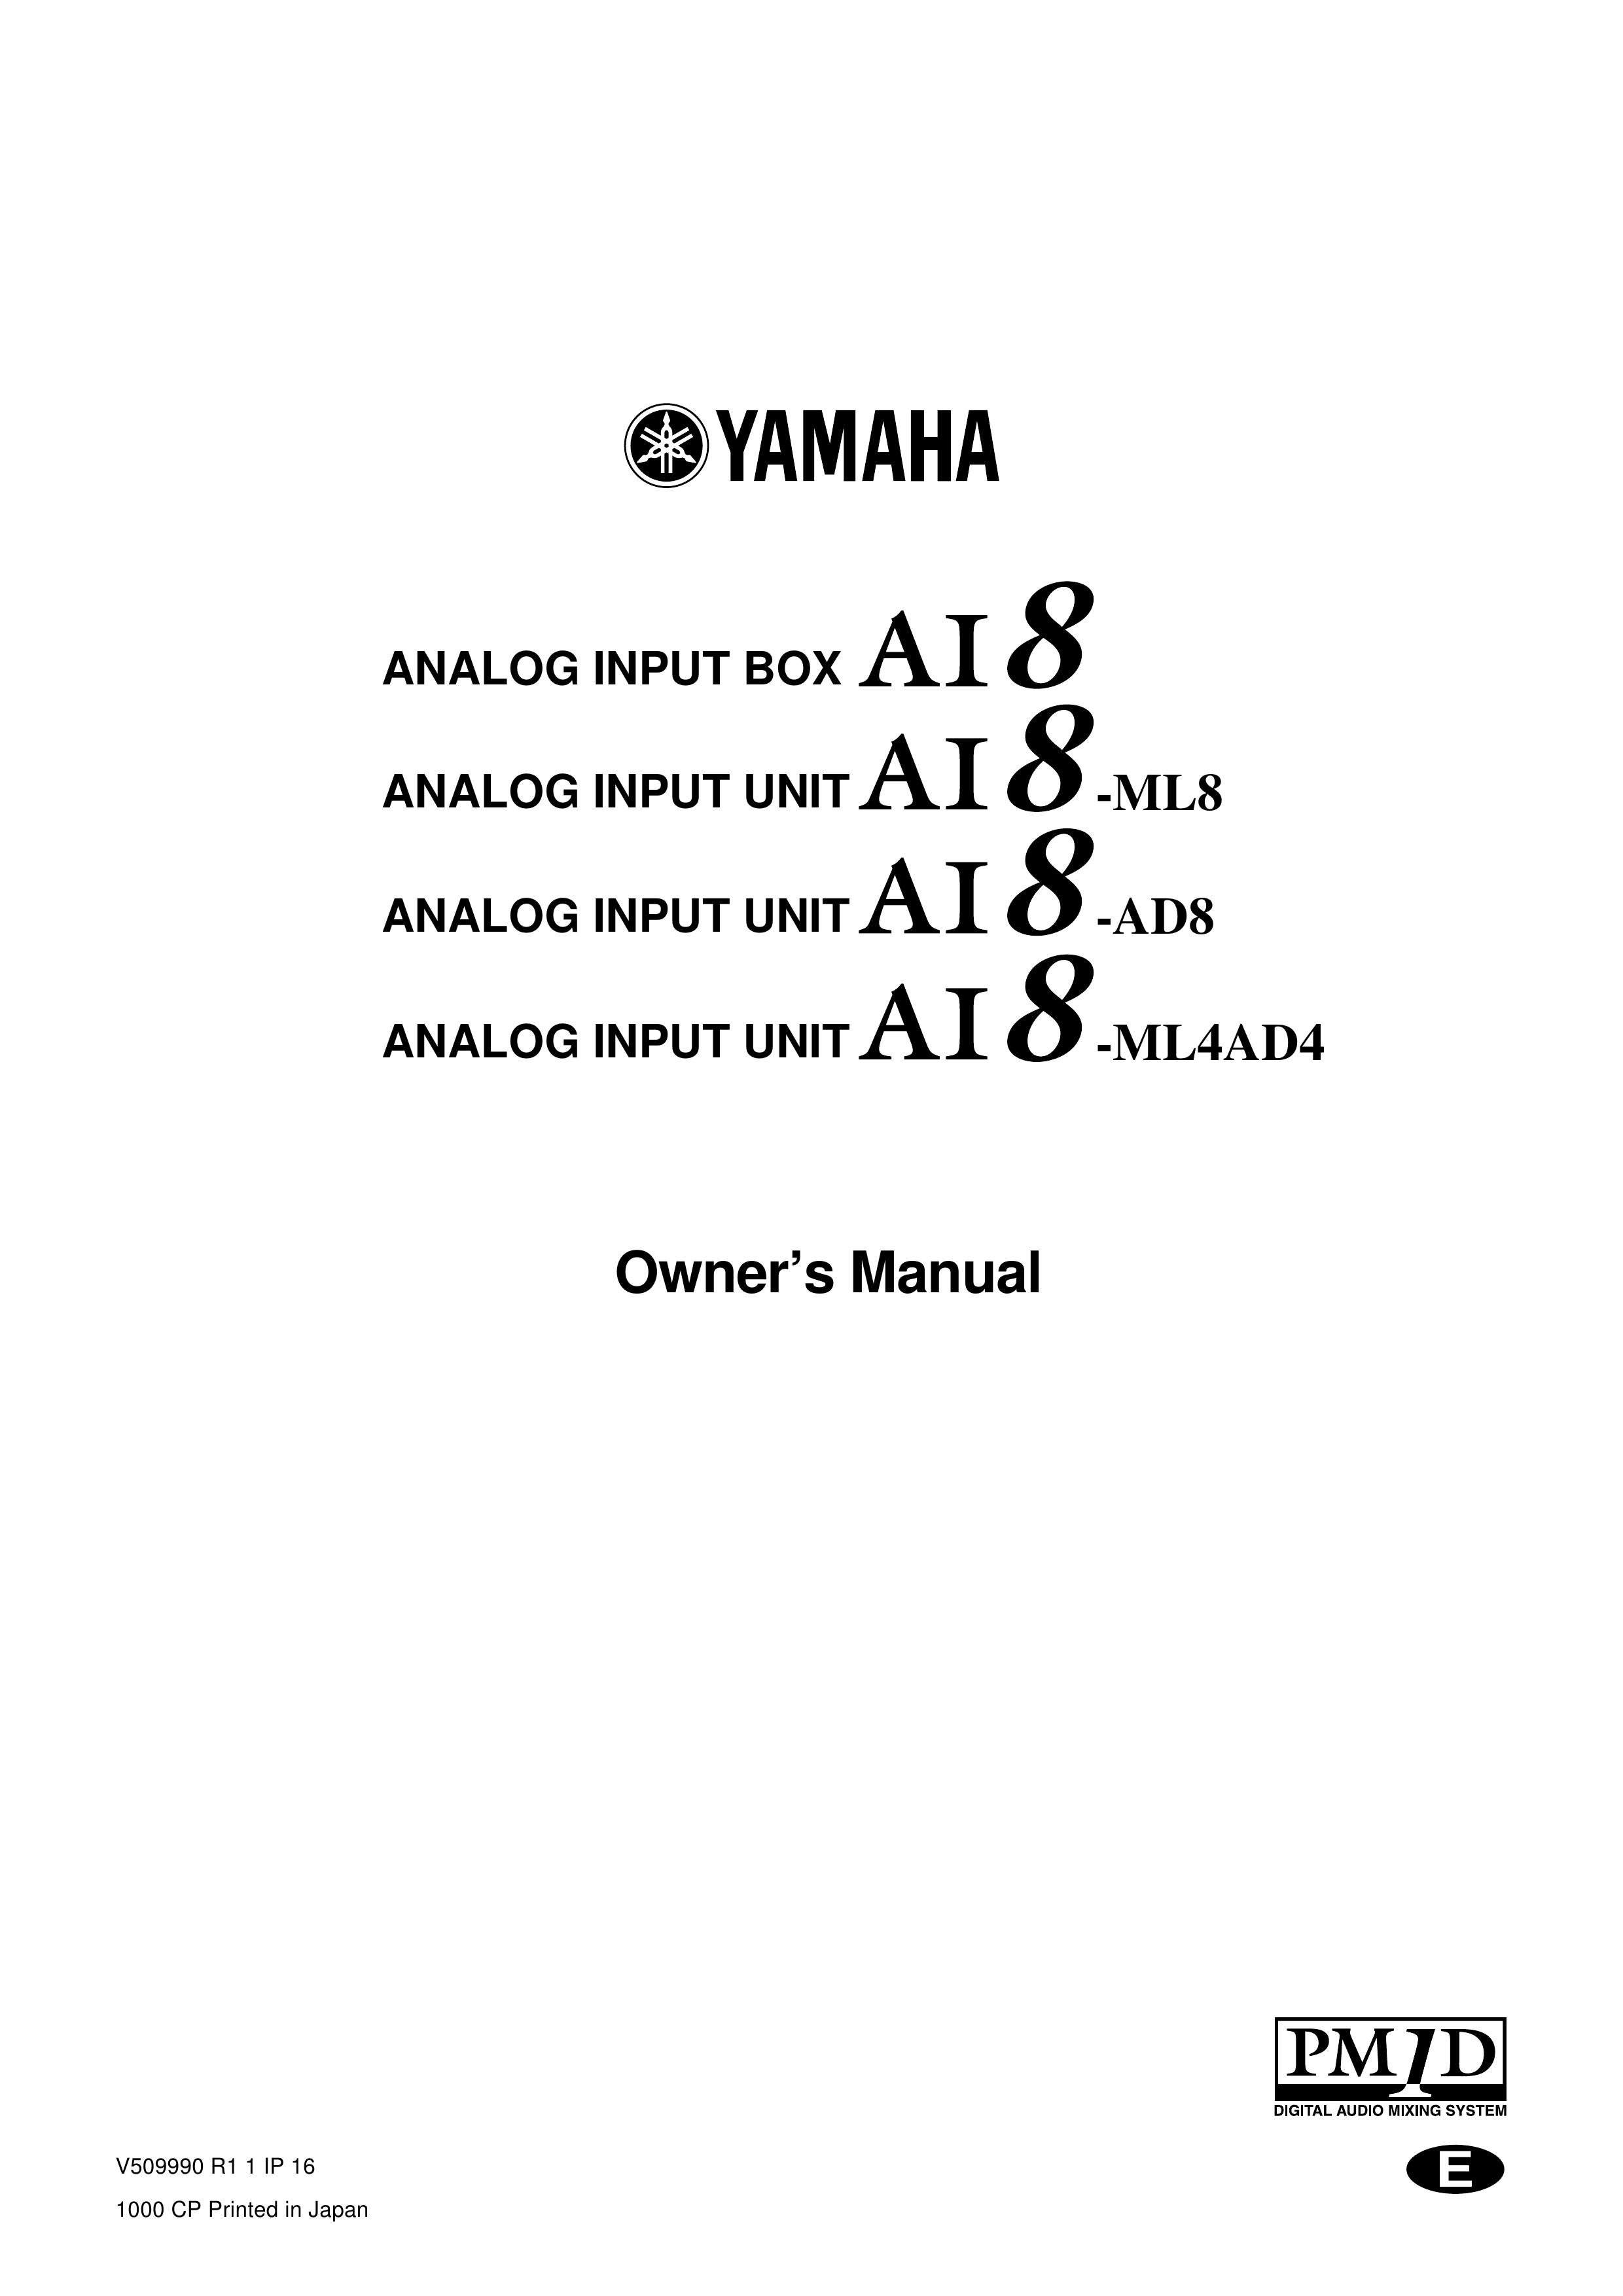 Yamaha AI8-AD8 Music Mixer User Manual